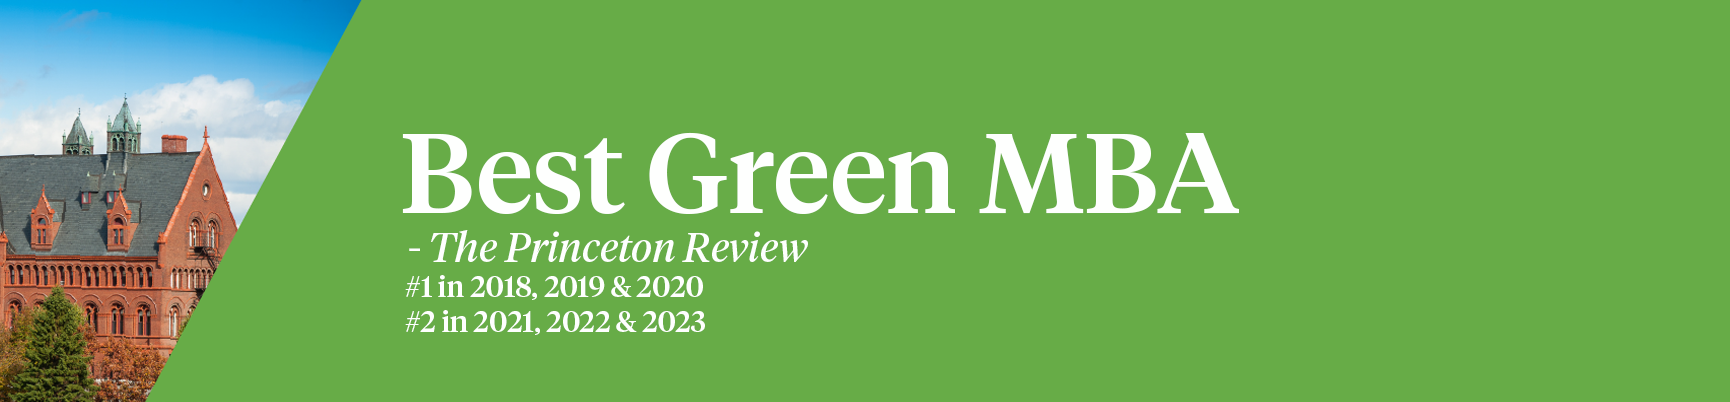 No.1 Green MBA Princeton Review 2020 2019 2018